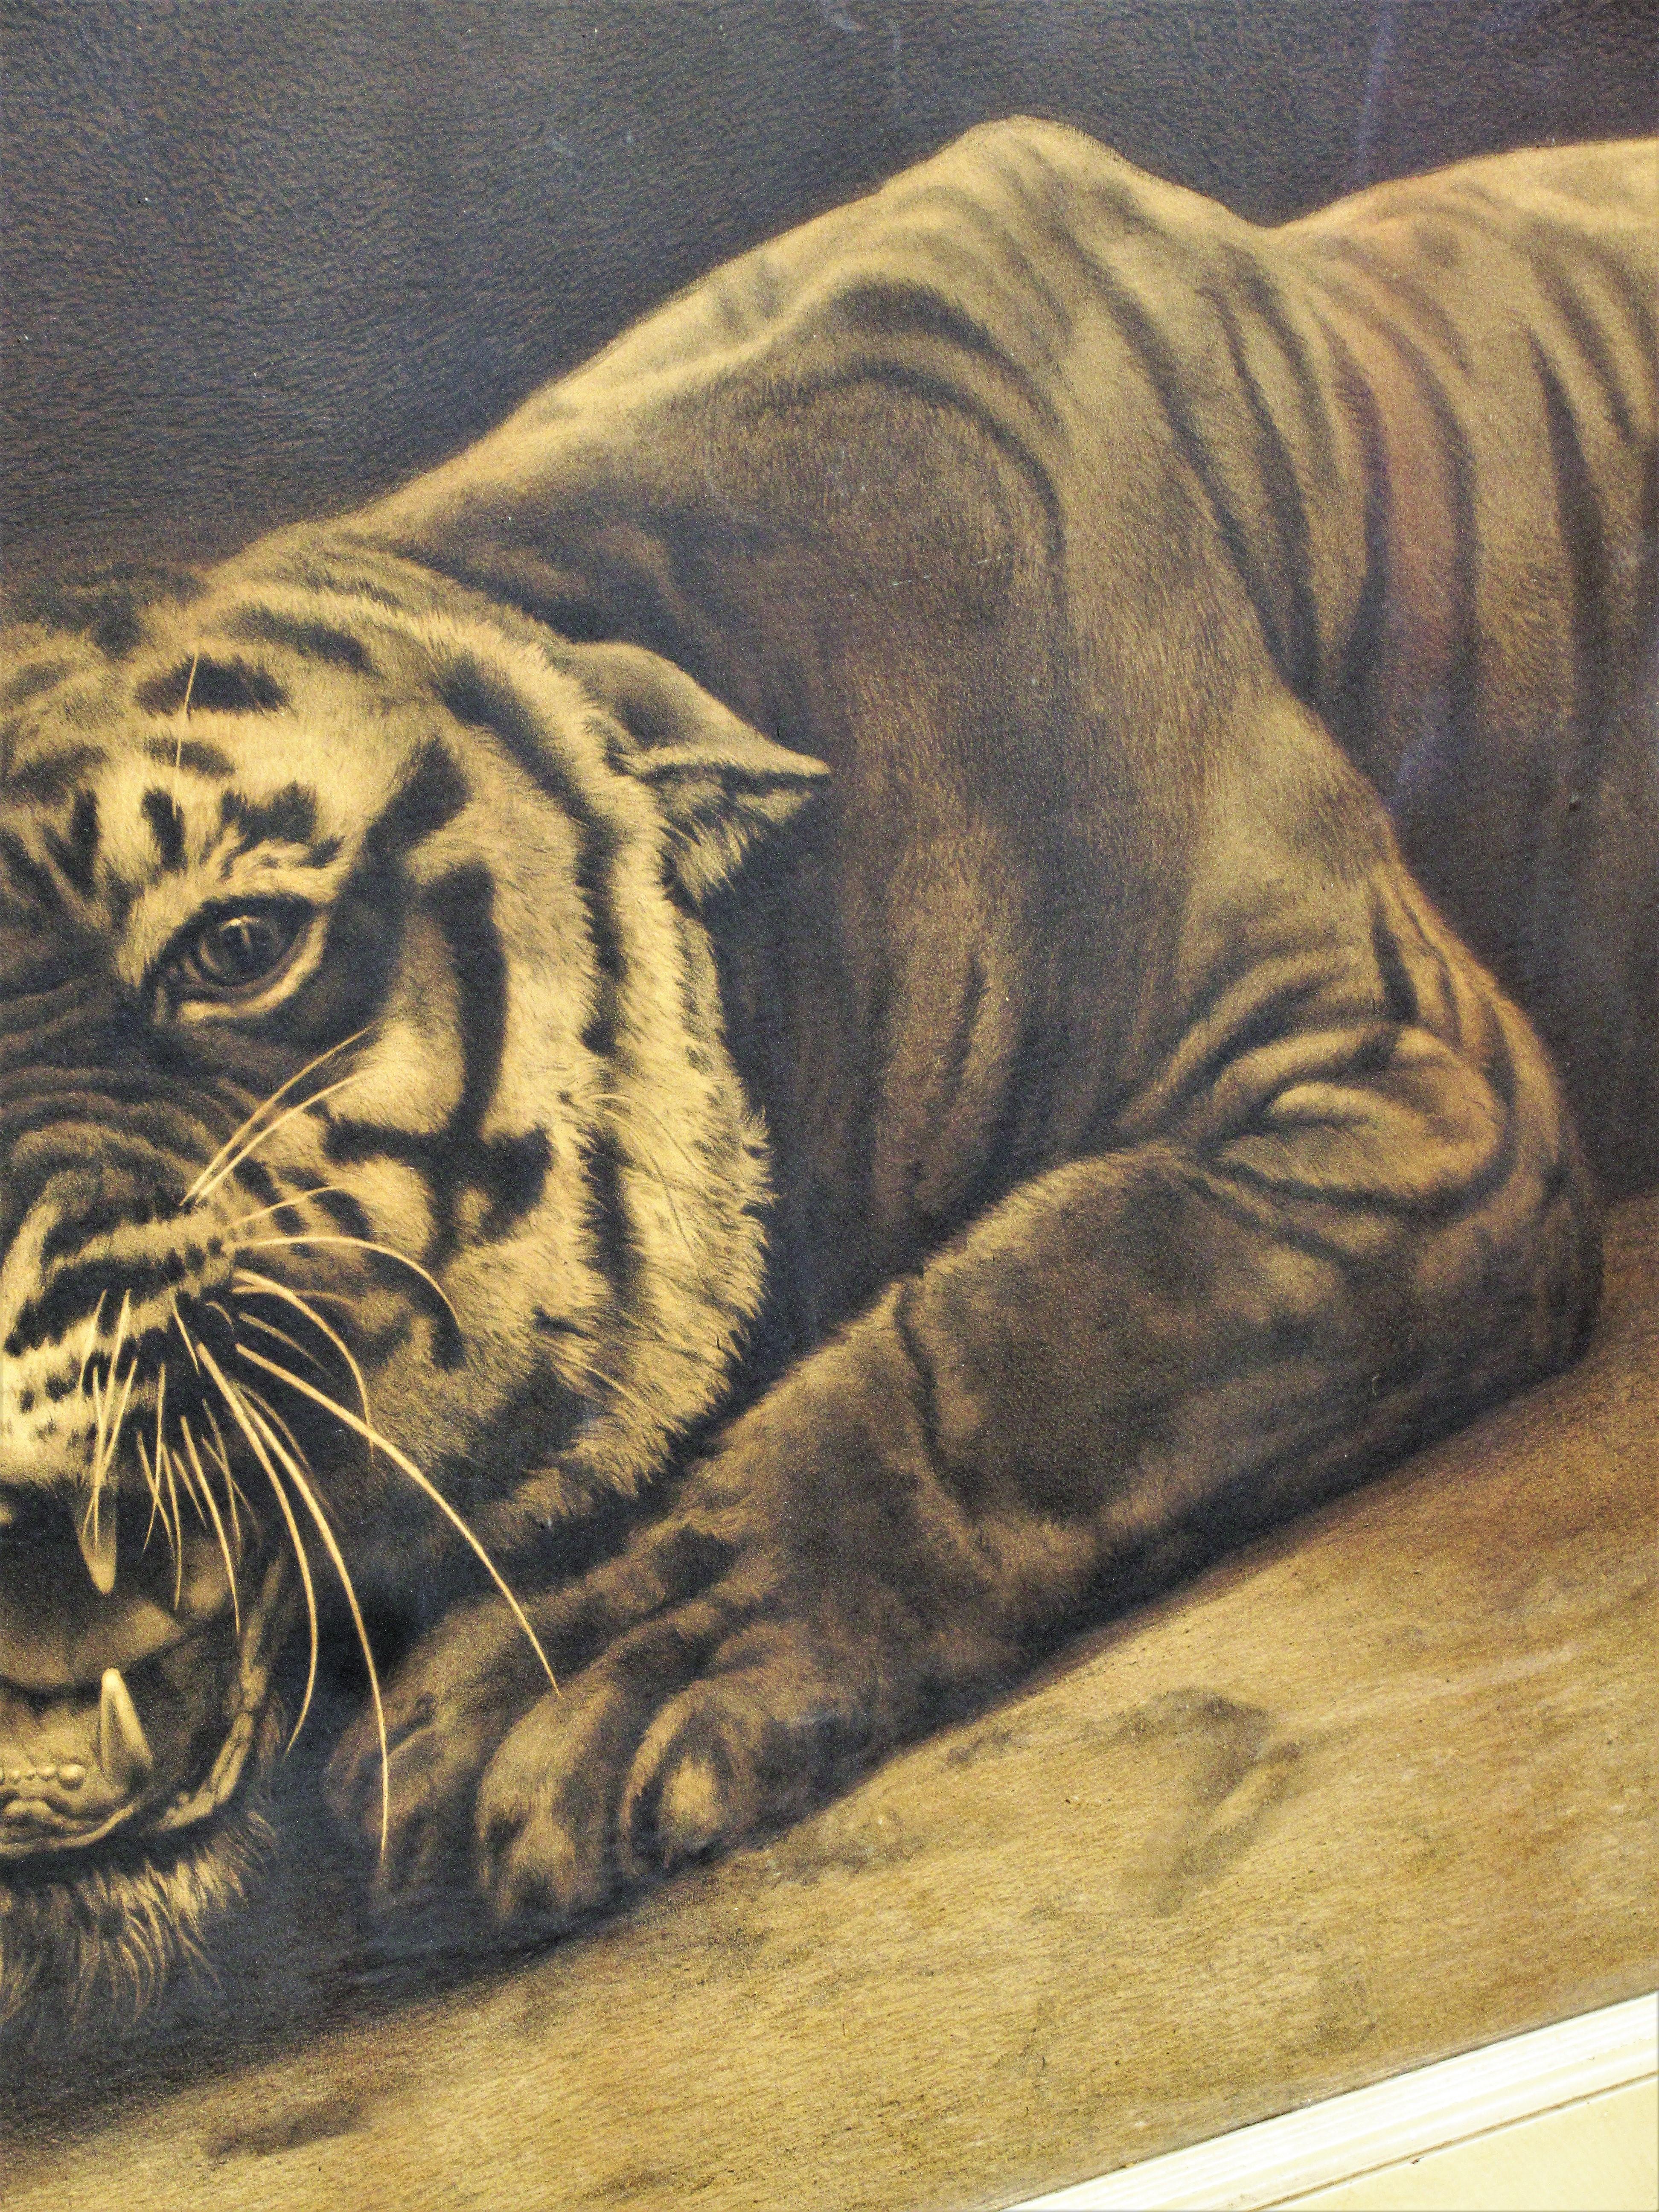 Vintage Original Signed and Framed Tiger Print